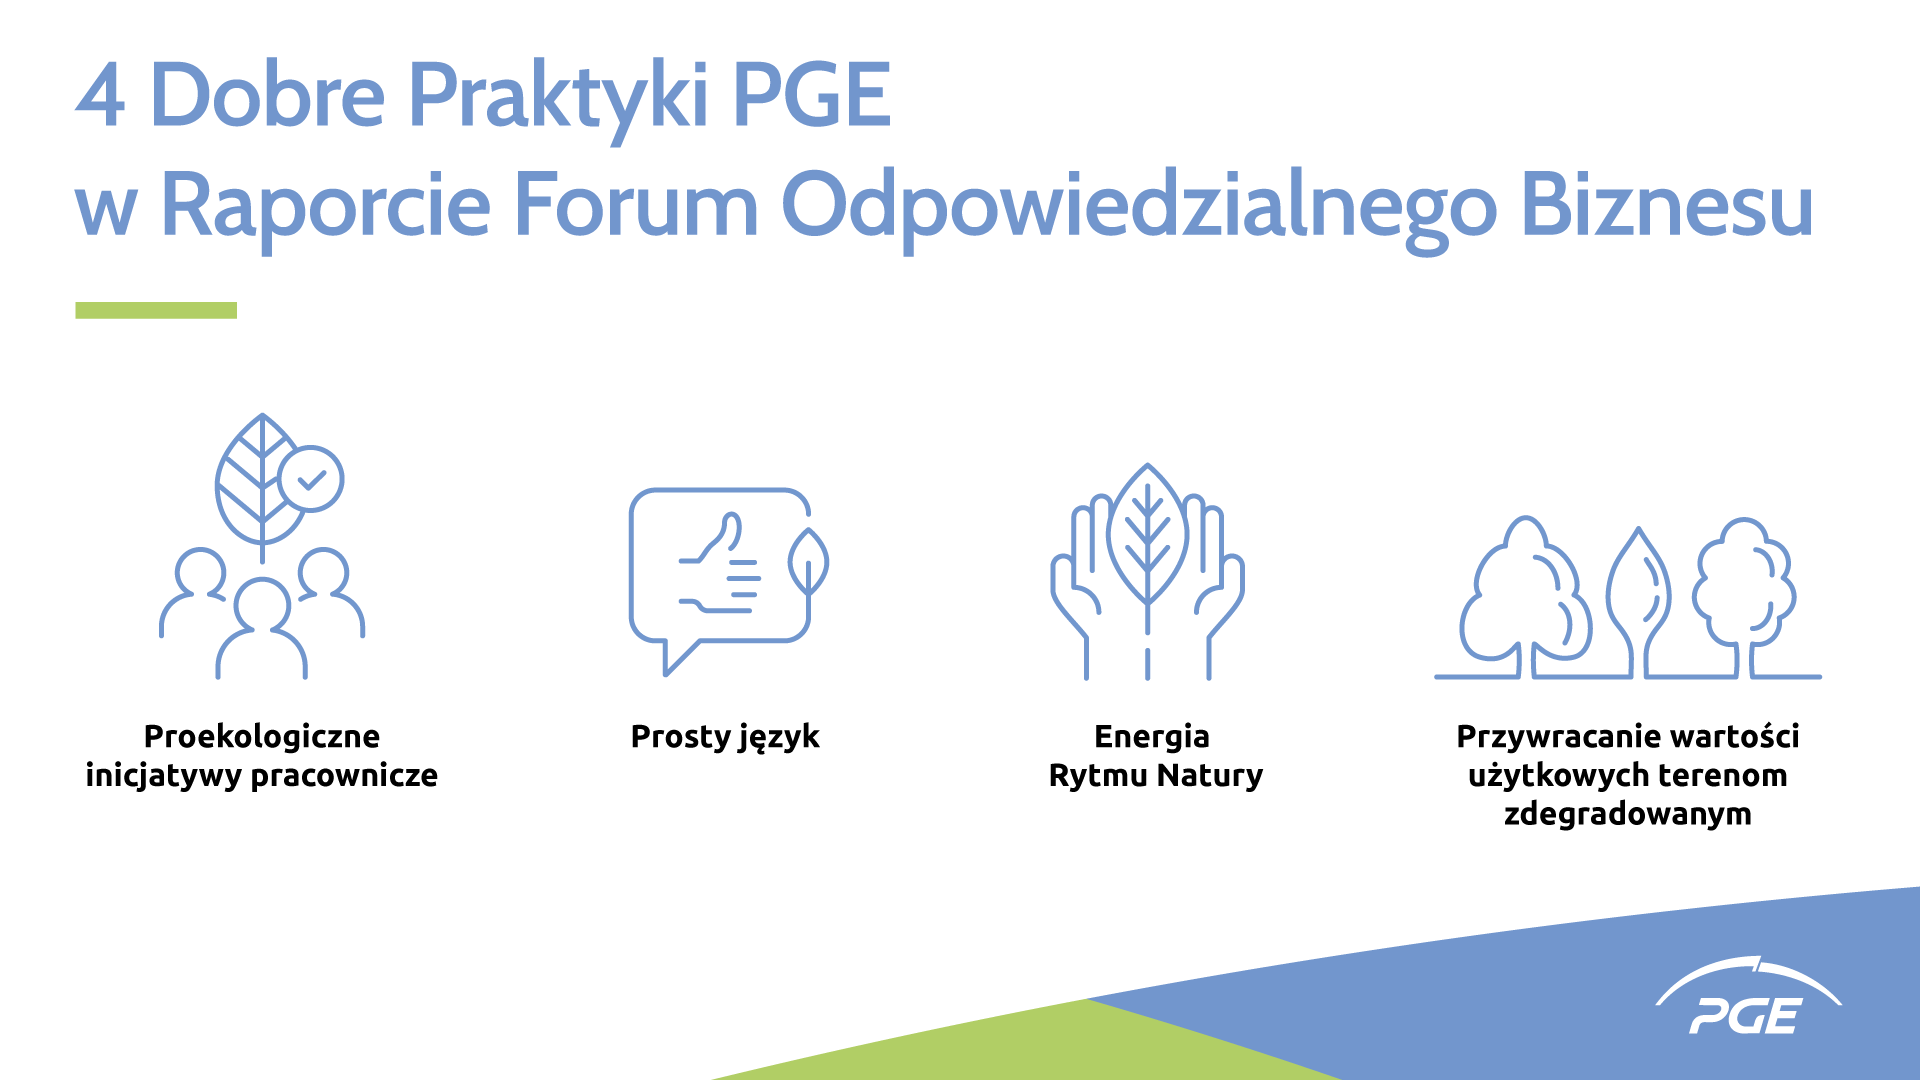 4 dobre praktyki PGE, infografika PGE